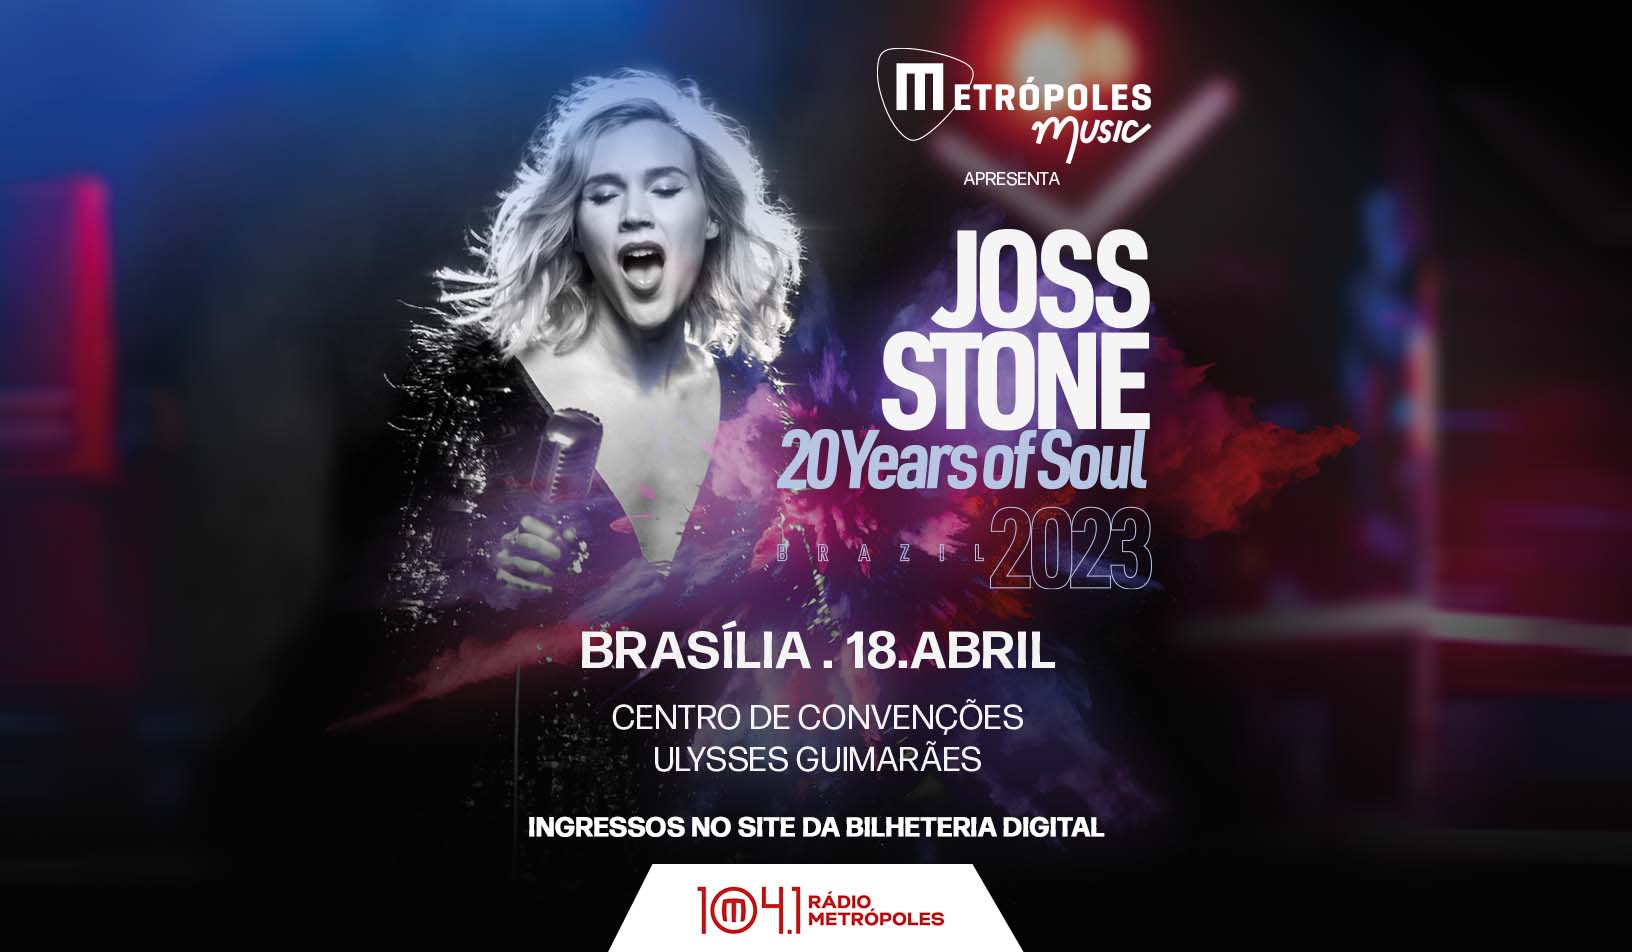 Joss Stone – 20 Years of soul 2023